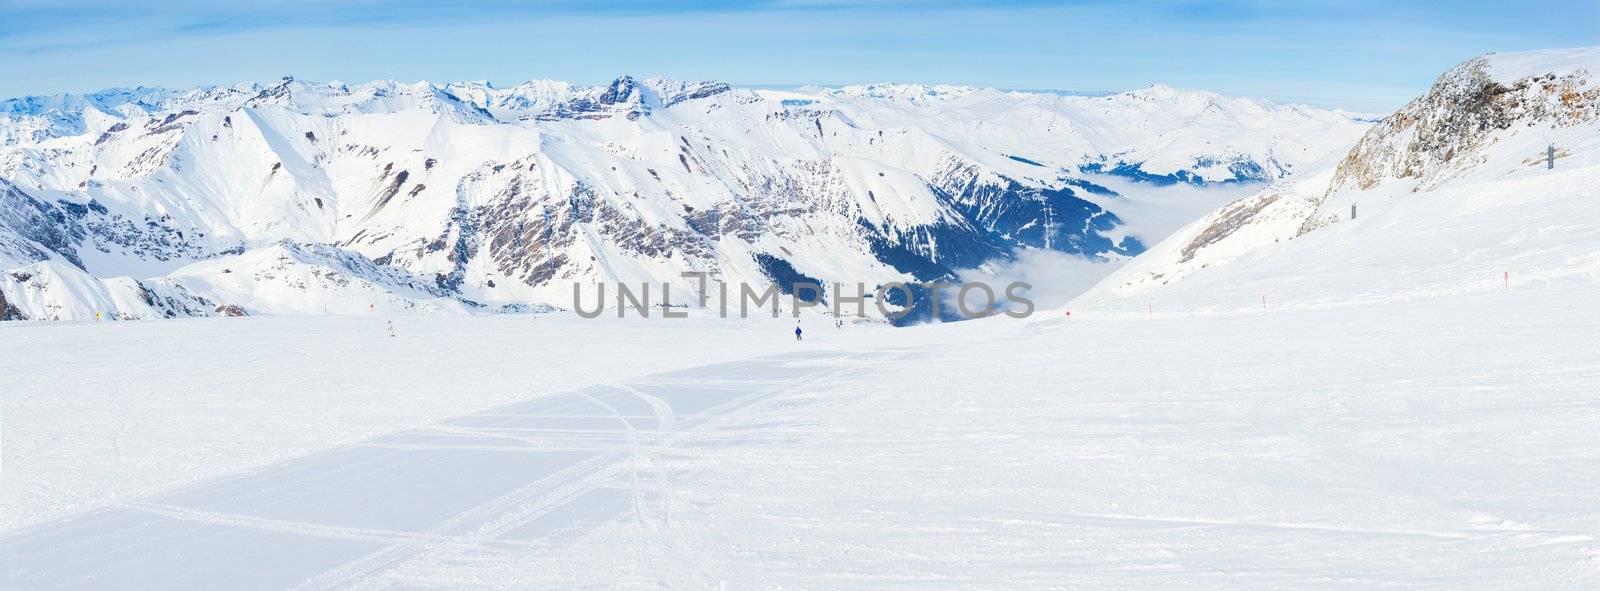 The Alpine skiing resort in Austria Zillertal. Panorama